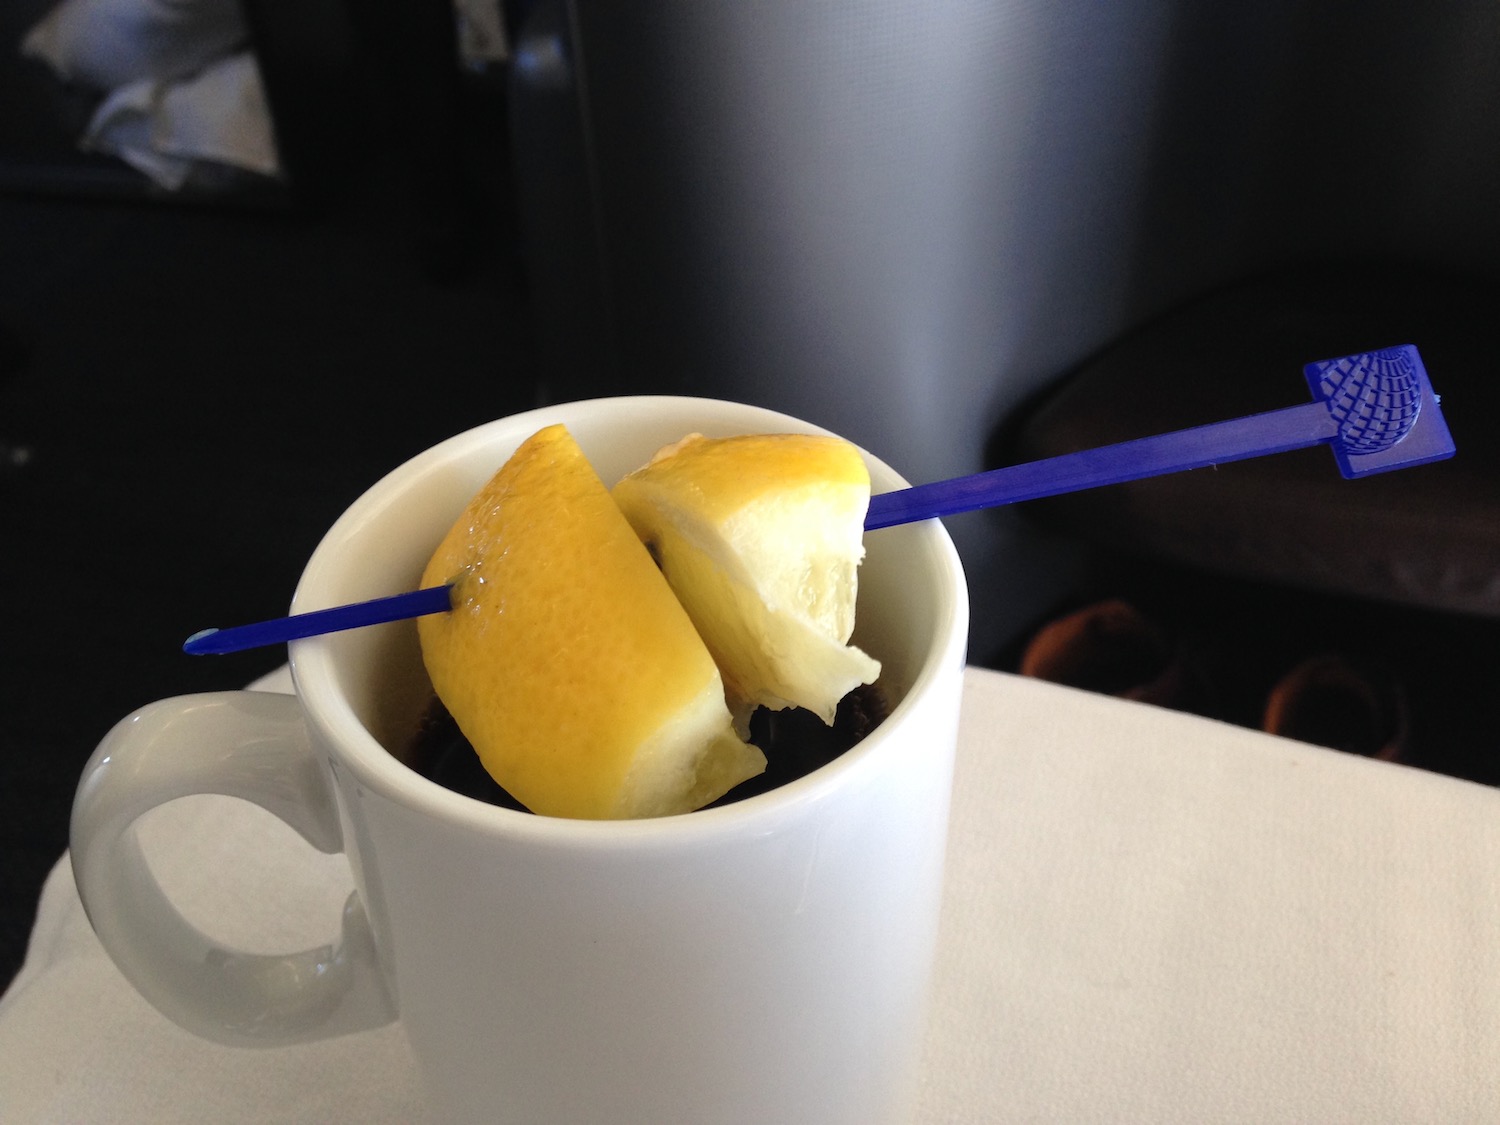 a lemon slices in a mug